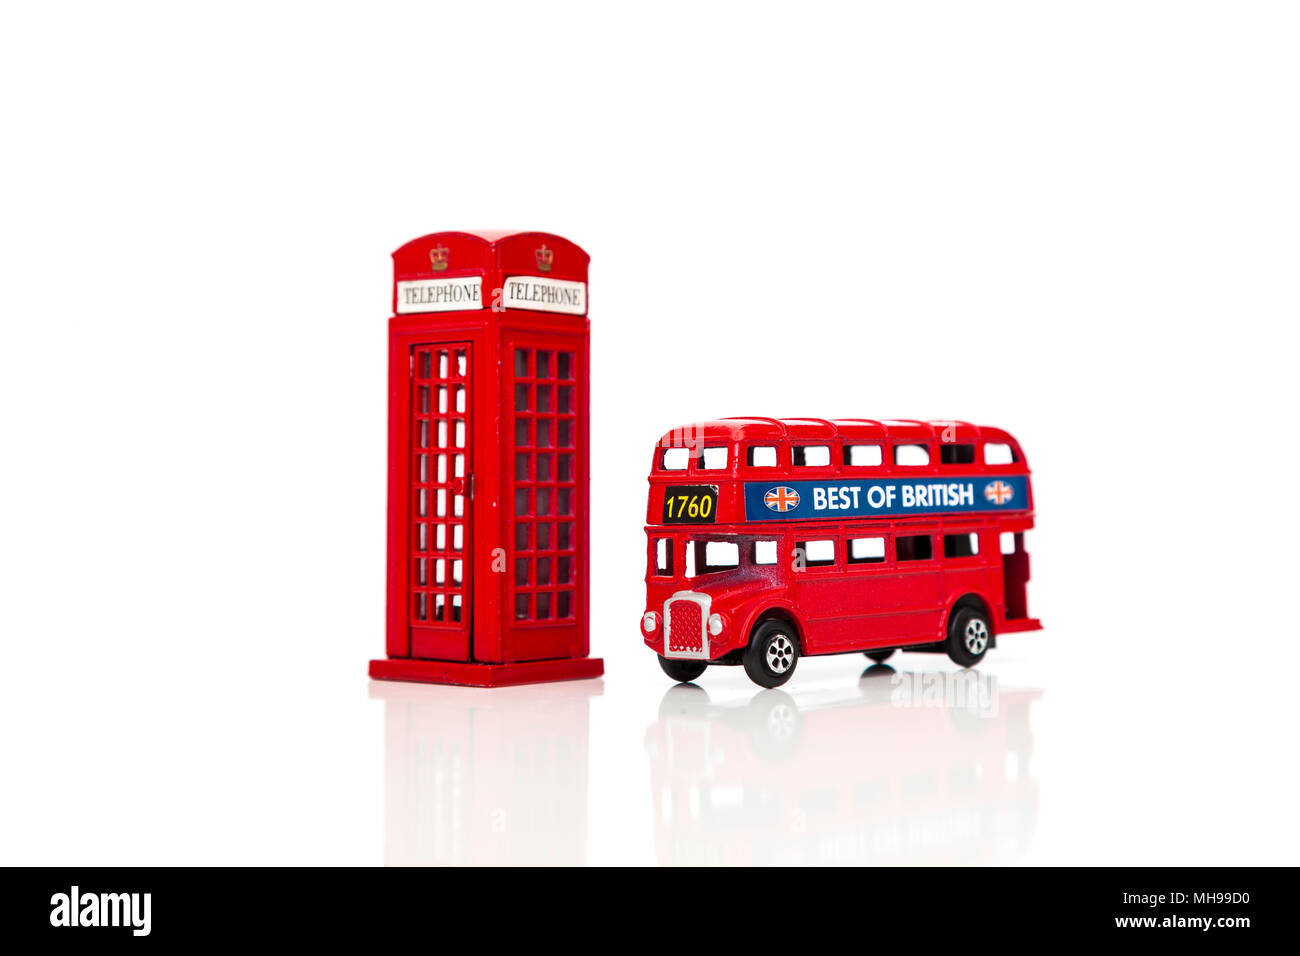 Un Bus Rouge London Doubledecker téléphone rouge et fort. Isolé sur fond blanc Banque D'Images